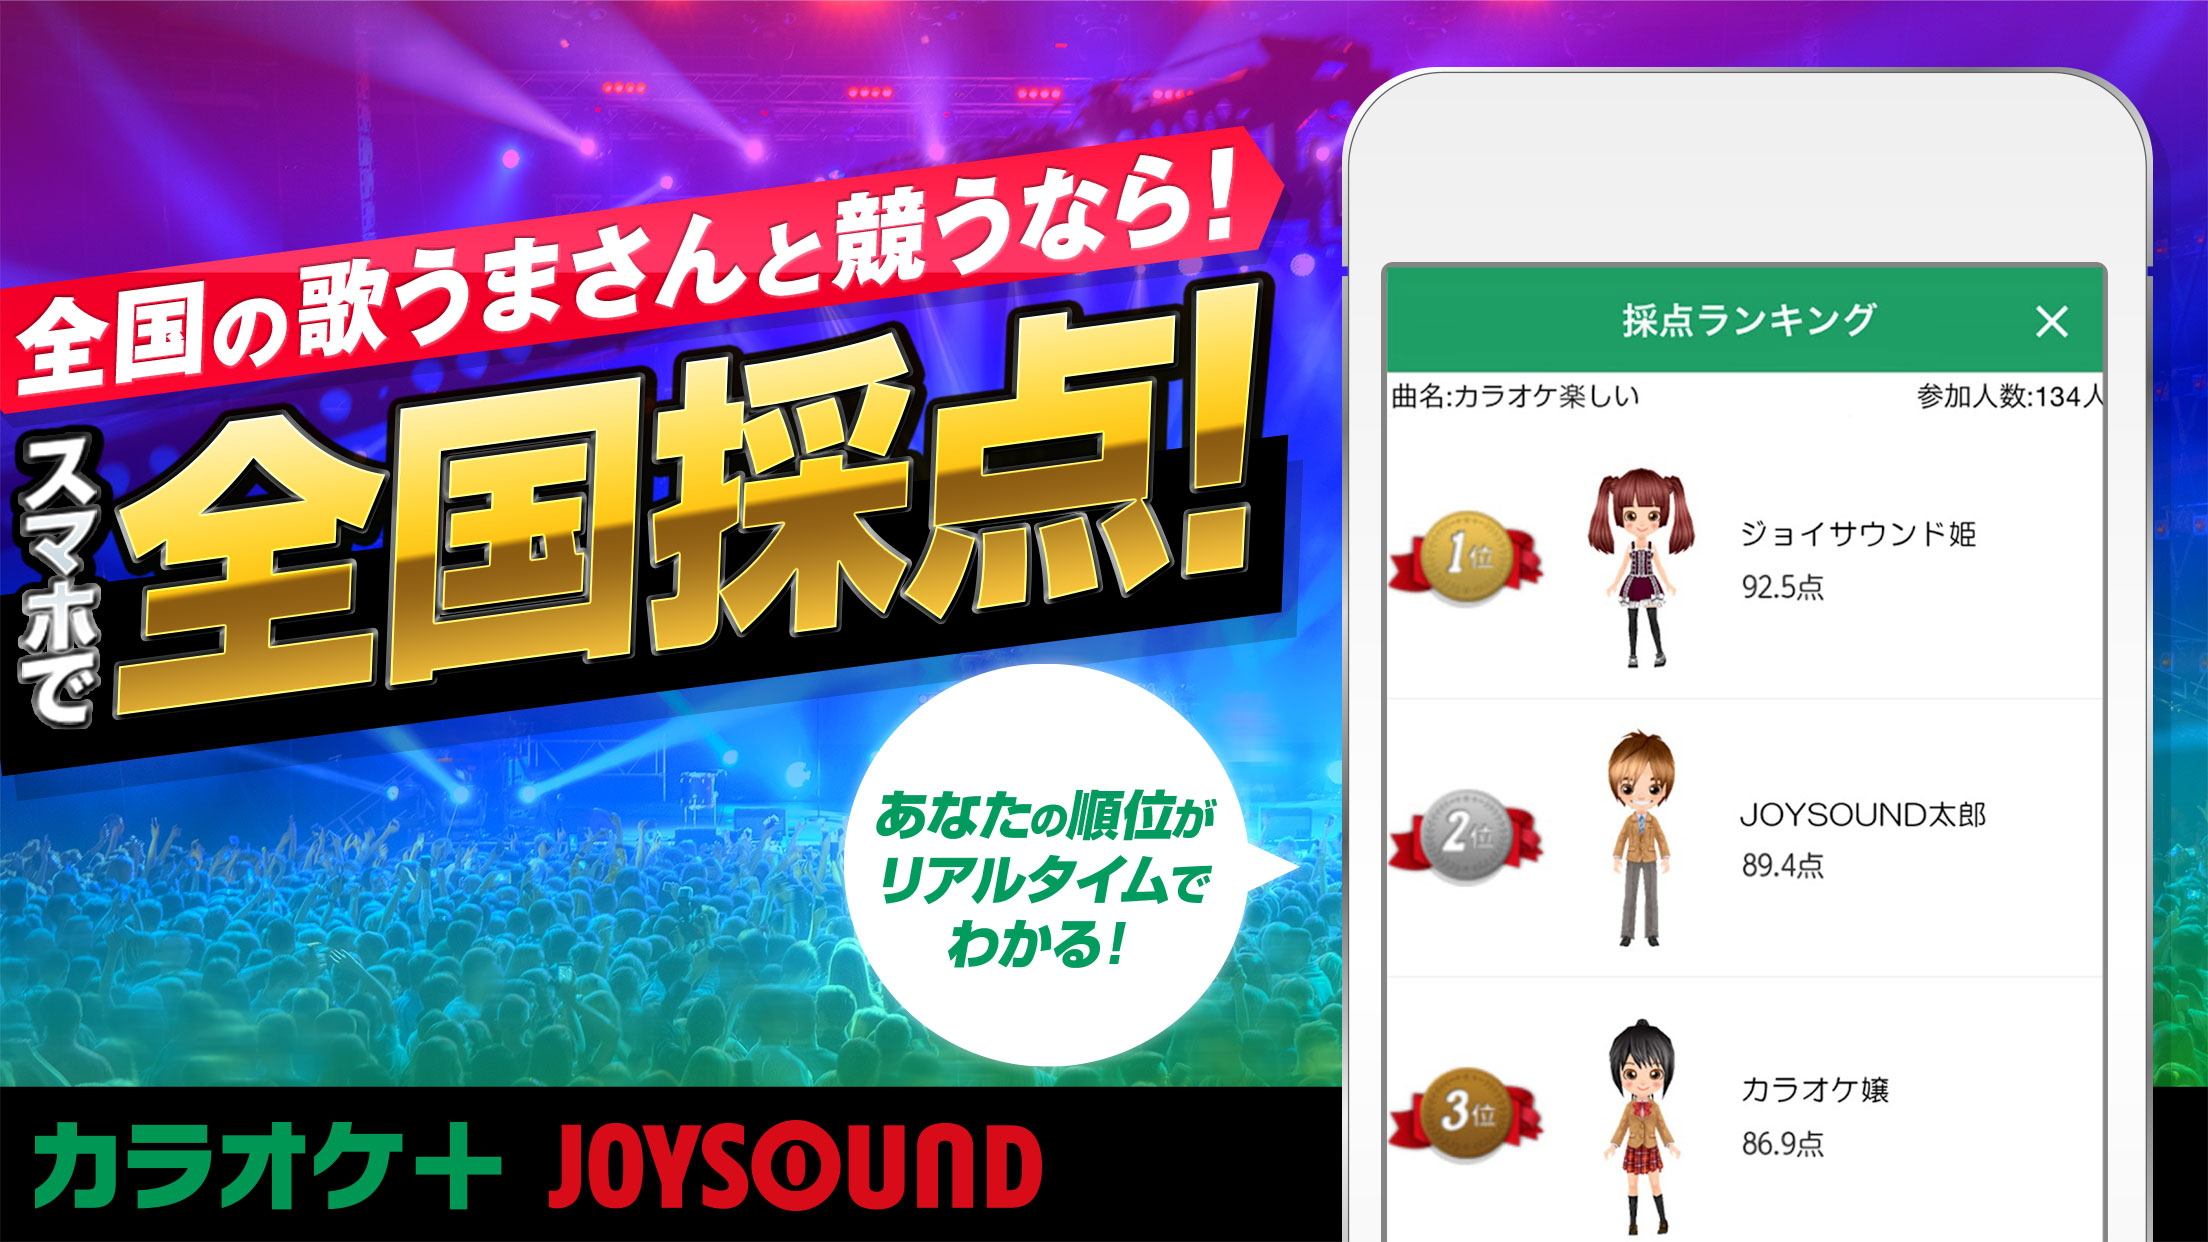 毎日無料で歌って採点 カラオケjoysound アプリ モバイルサービス一覧 Joysound Com